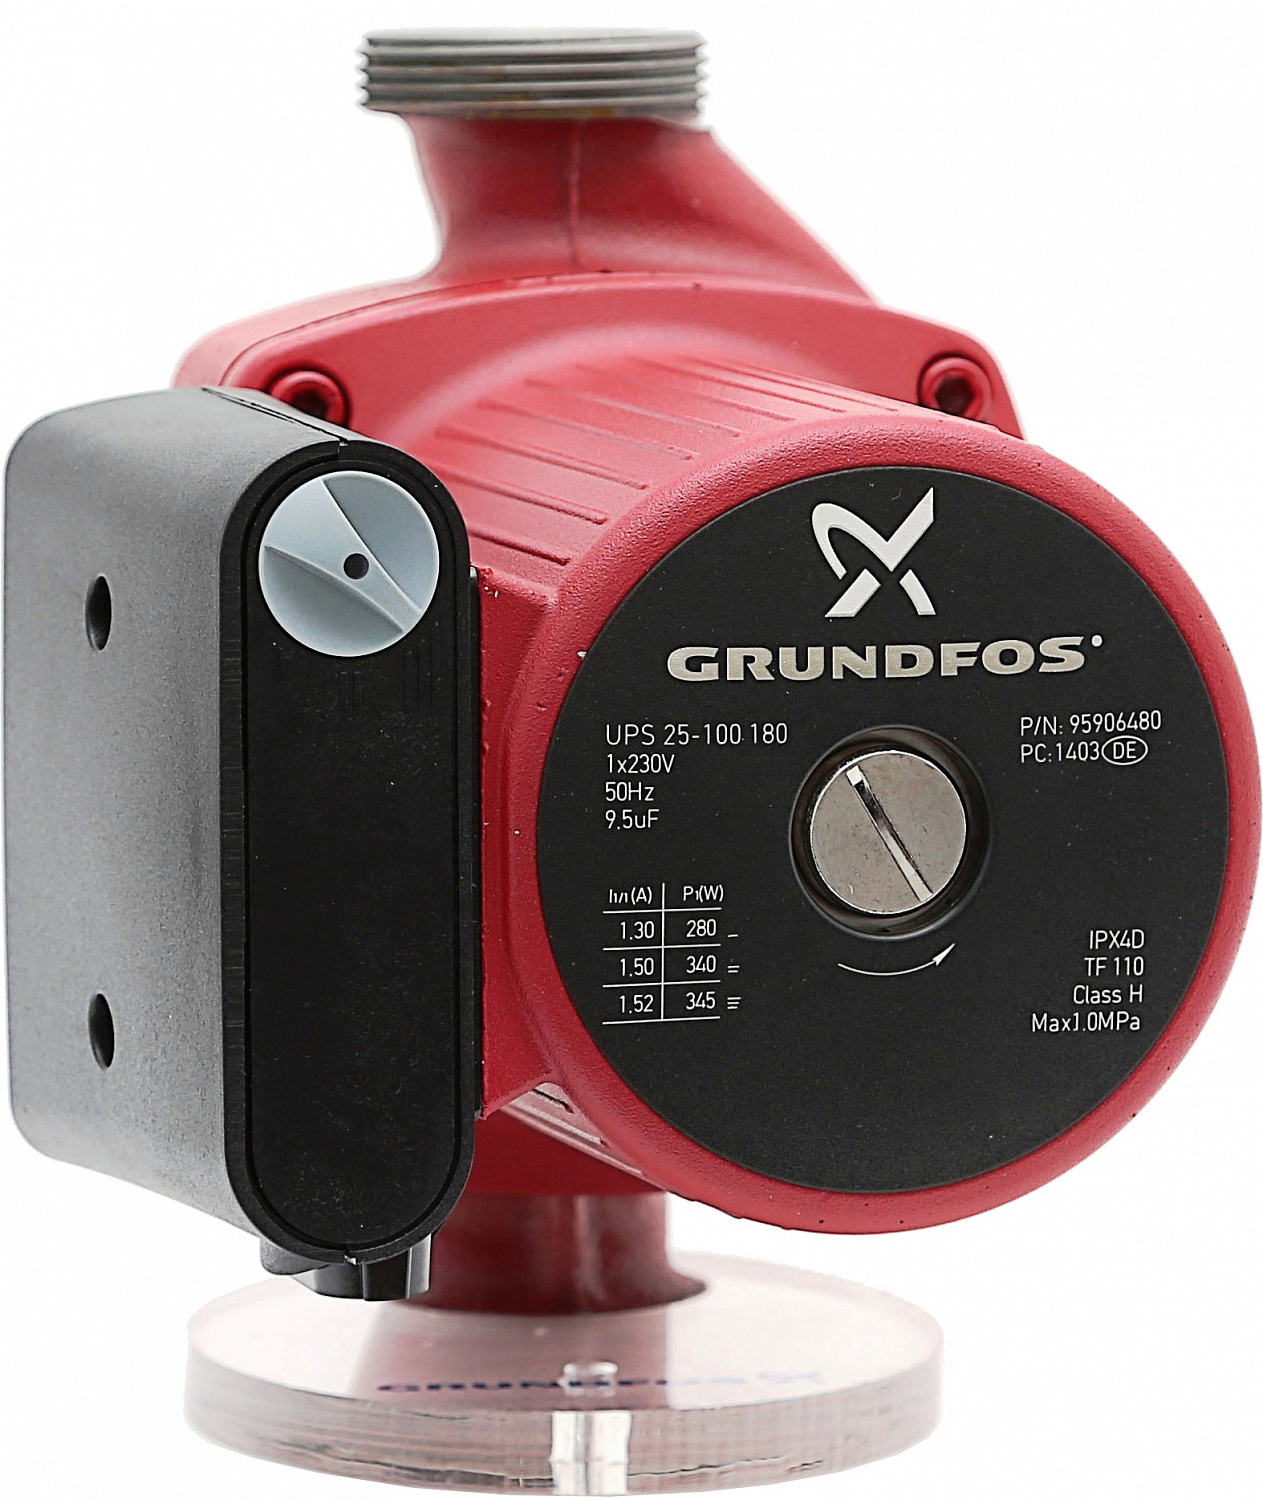  циркуляционный Grundfos UPS 25-100 180мм 1x230В 50Гц 95906480 .